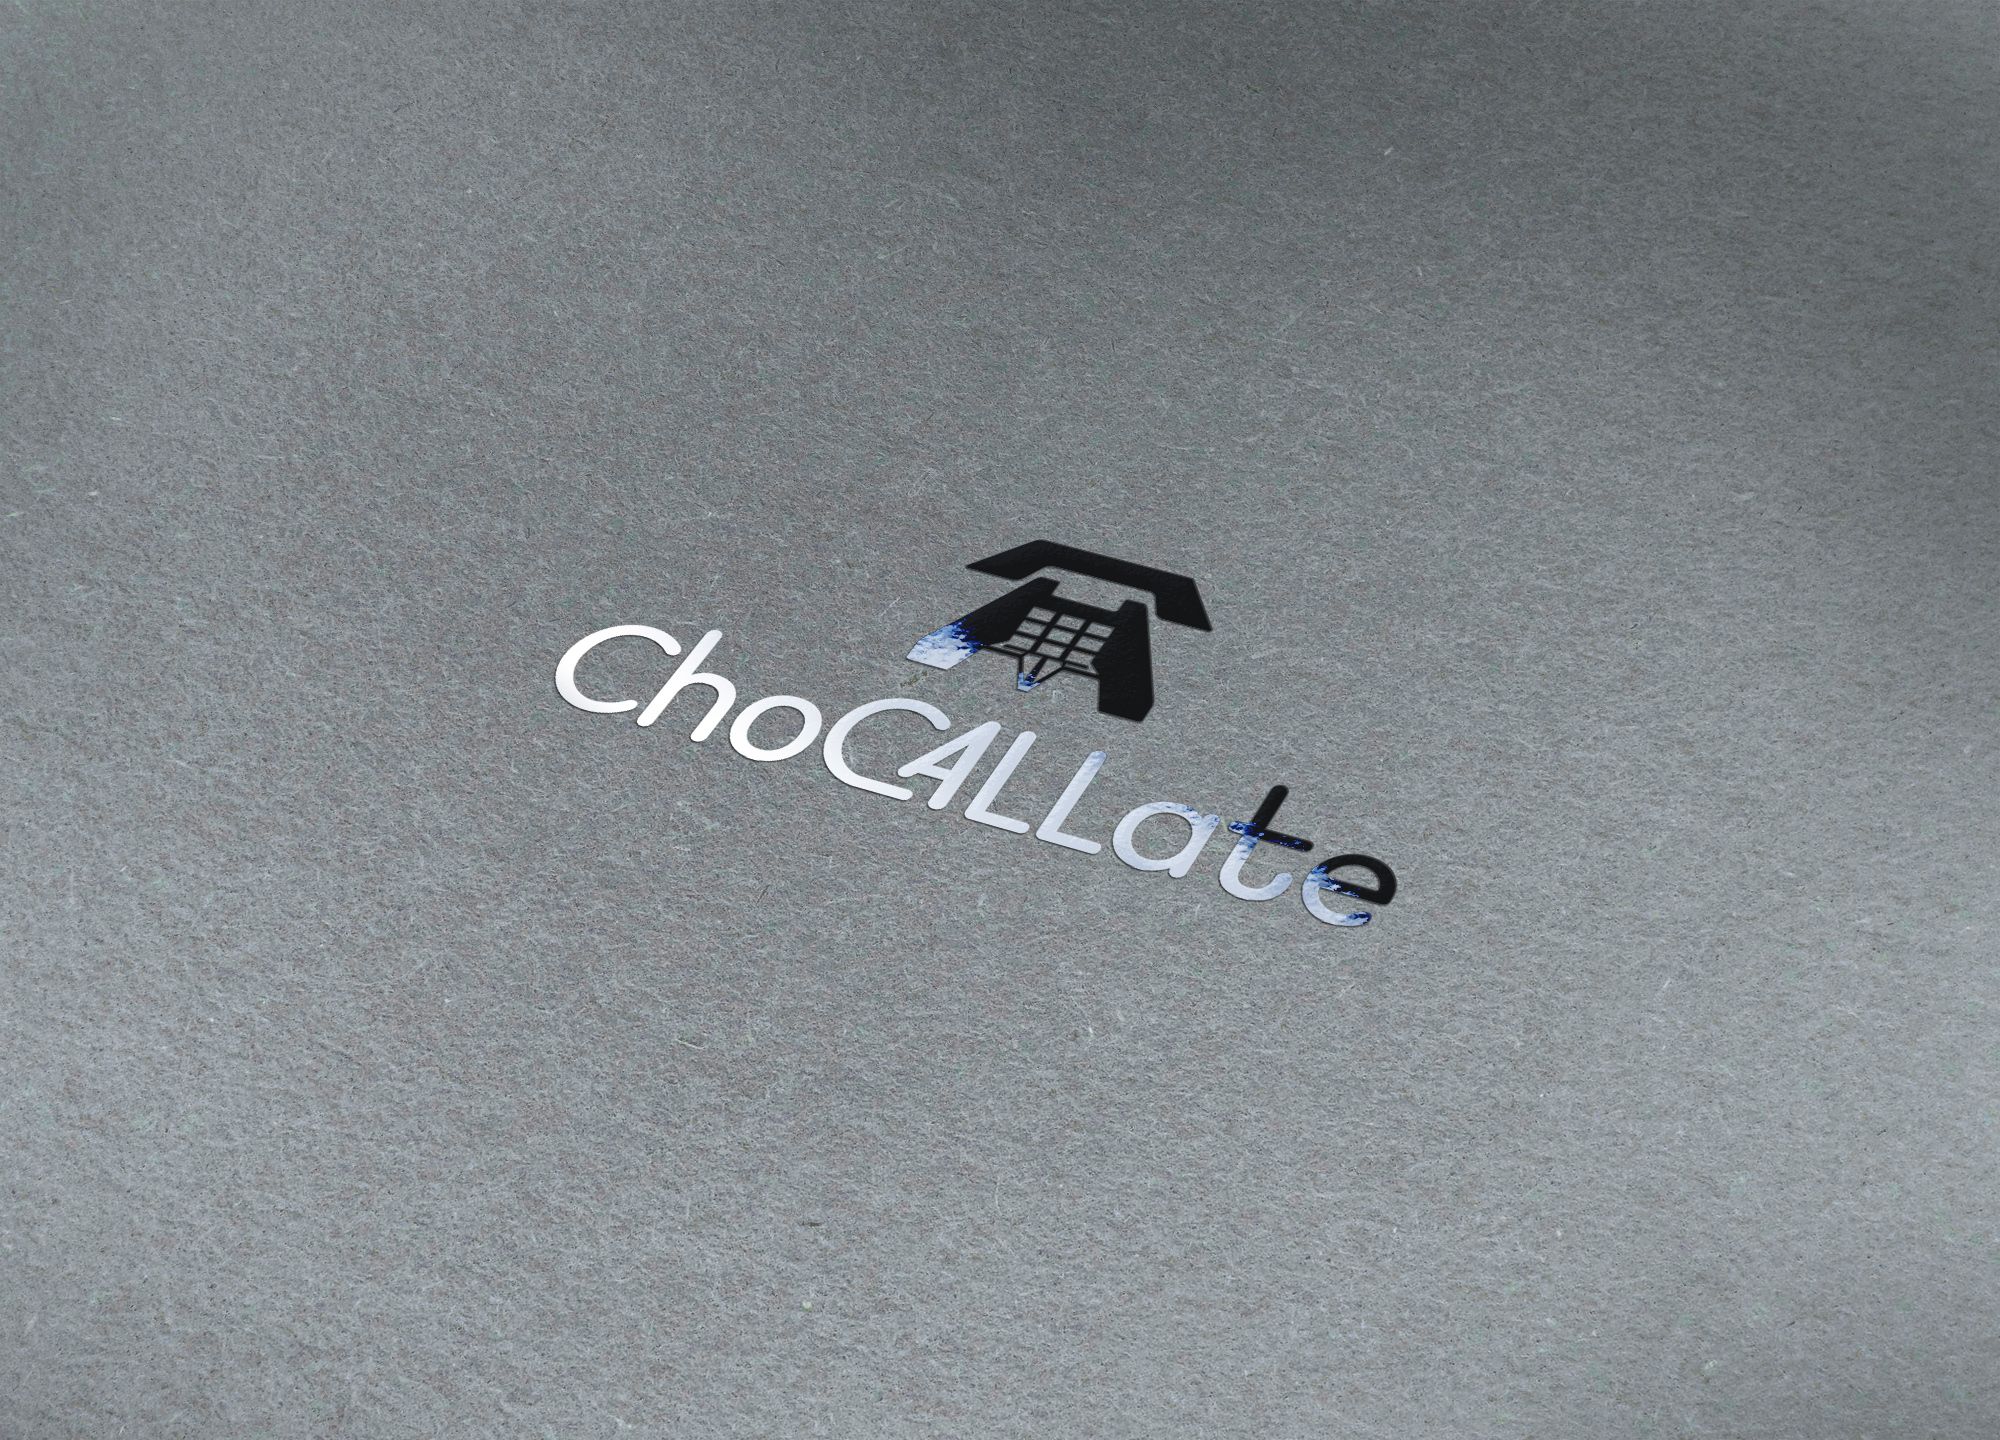 Шоколадные звонки :) для агент. продаж ChoCALLate - дизайнер Gas-Min